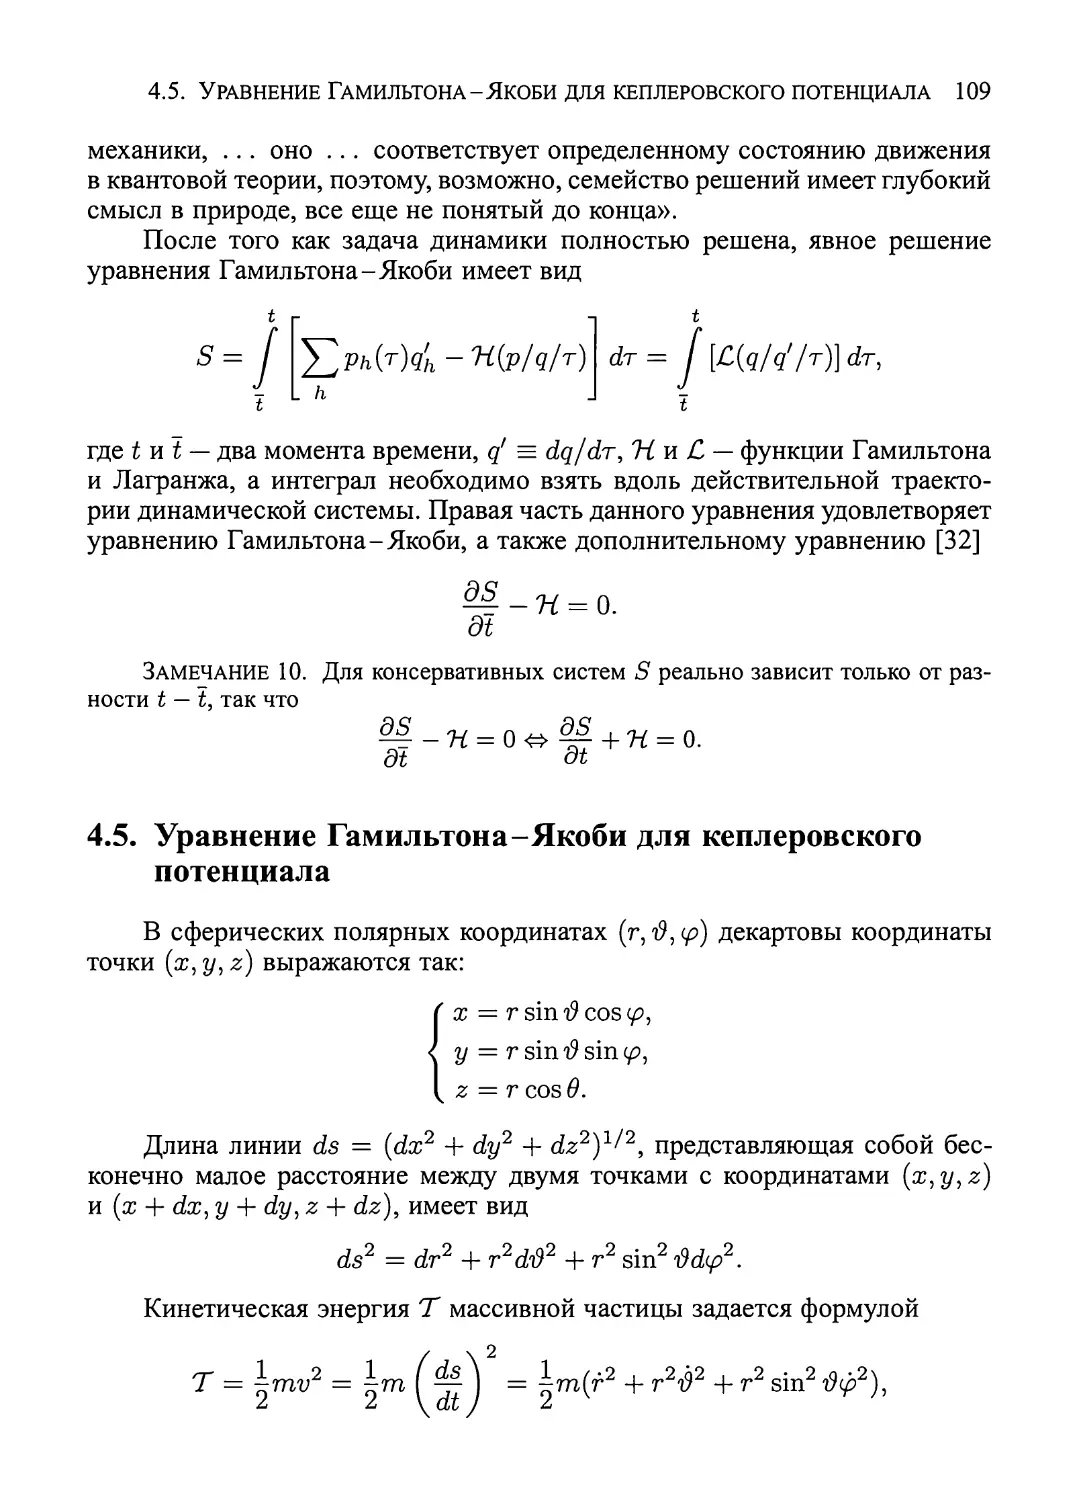 4.5.  Уравнение  Гамильтона-Якоби  для  кеплеровского  потенциала